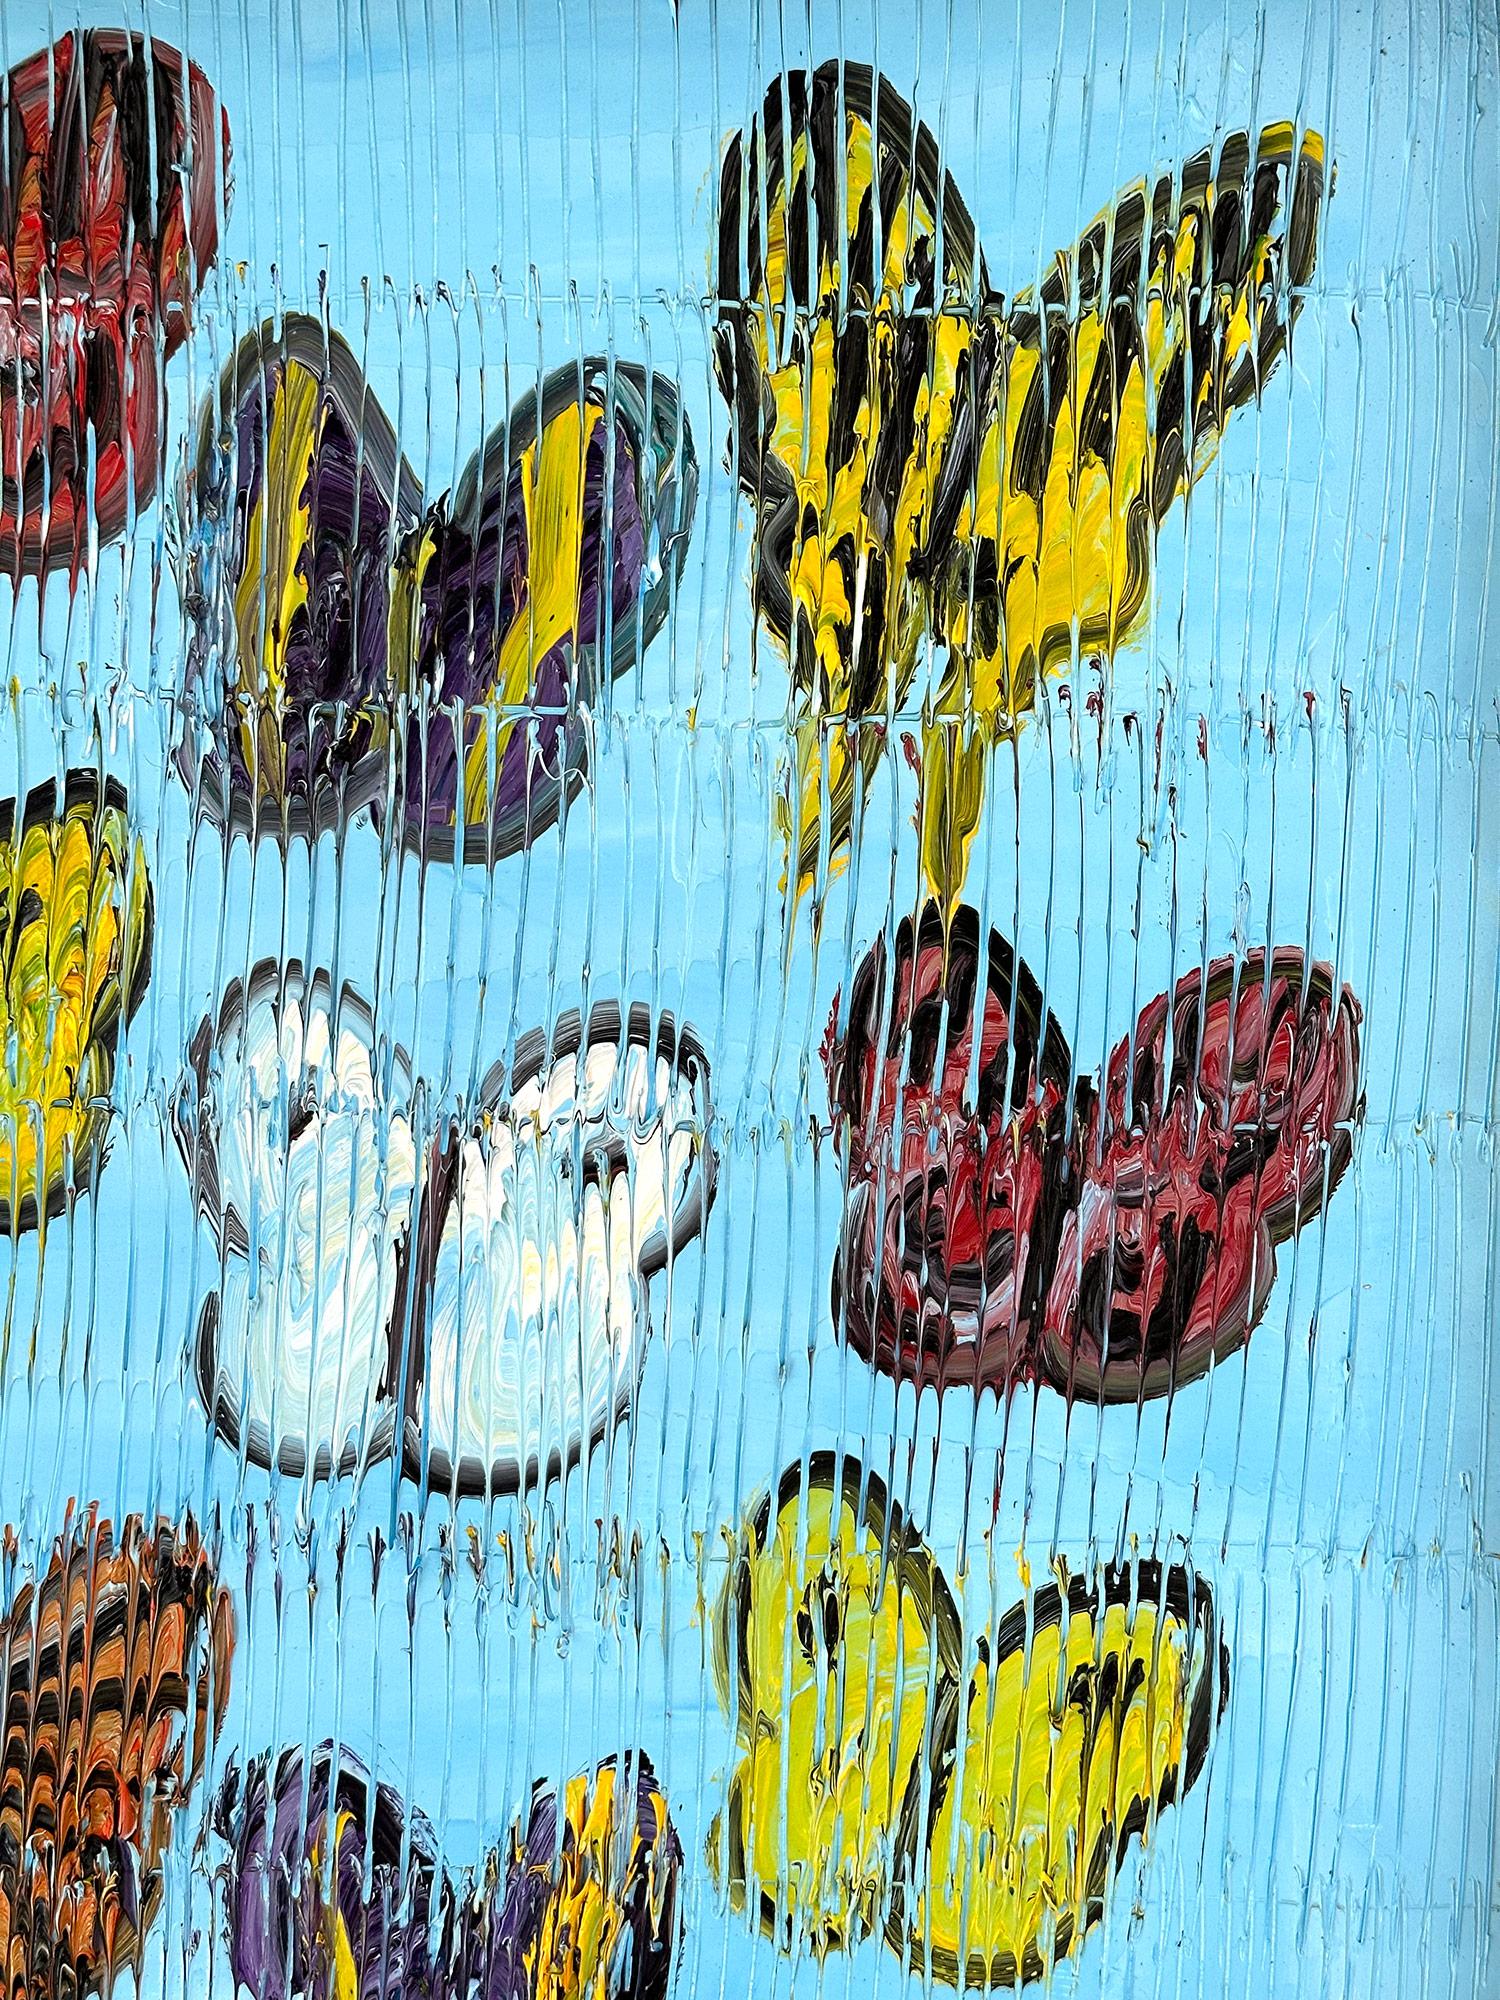 Eine wunderbare Komposition eines der ikonischsten Motive von Slonem, nämlich Schmetterlinge. Dieses Stück zeigt mehrfarbige, zarte Schmetterlinge, die in einer wunderschönen, violettblauen Landschaft aufsteigen. Slonem zeichnet seine berühmten